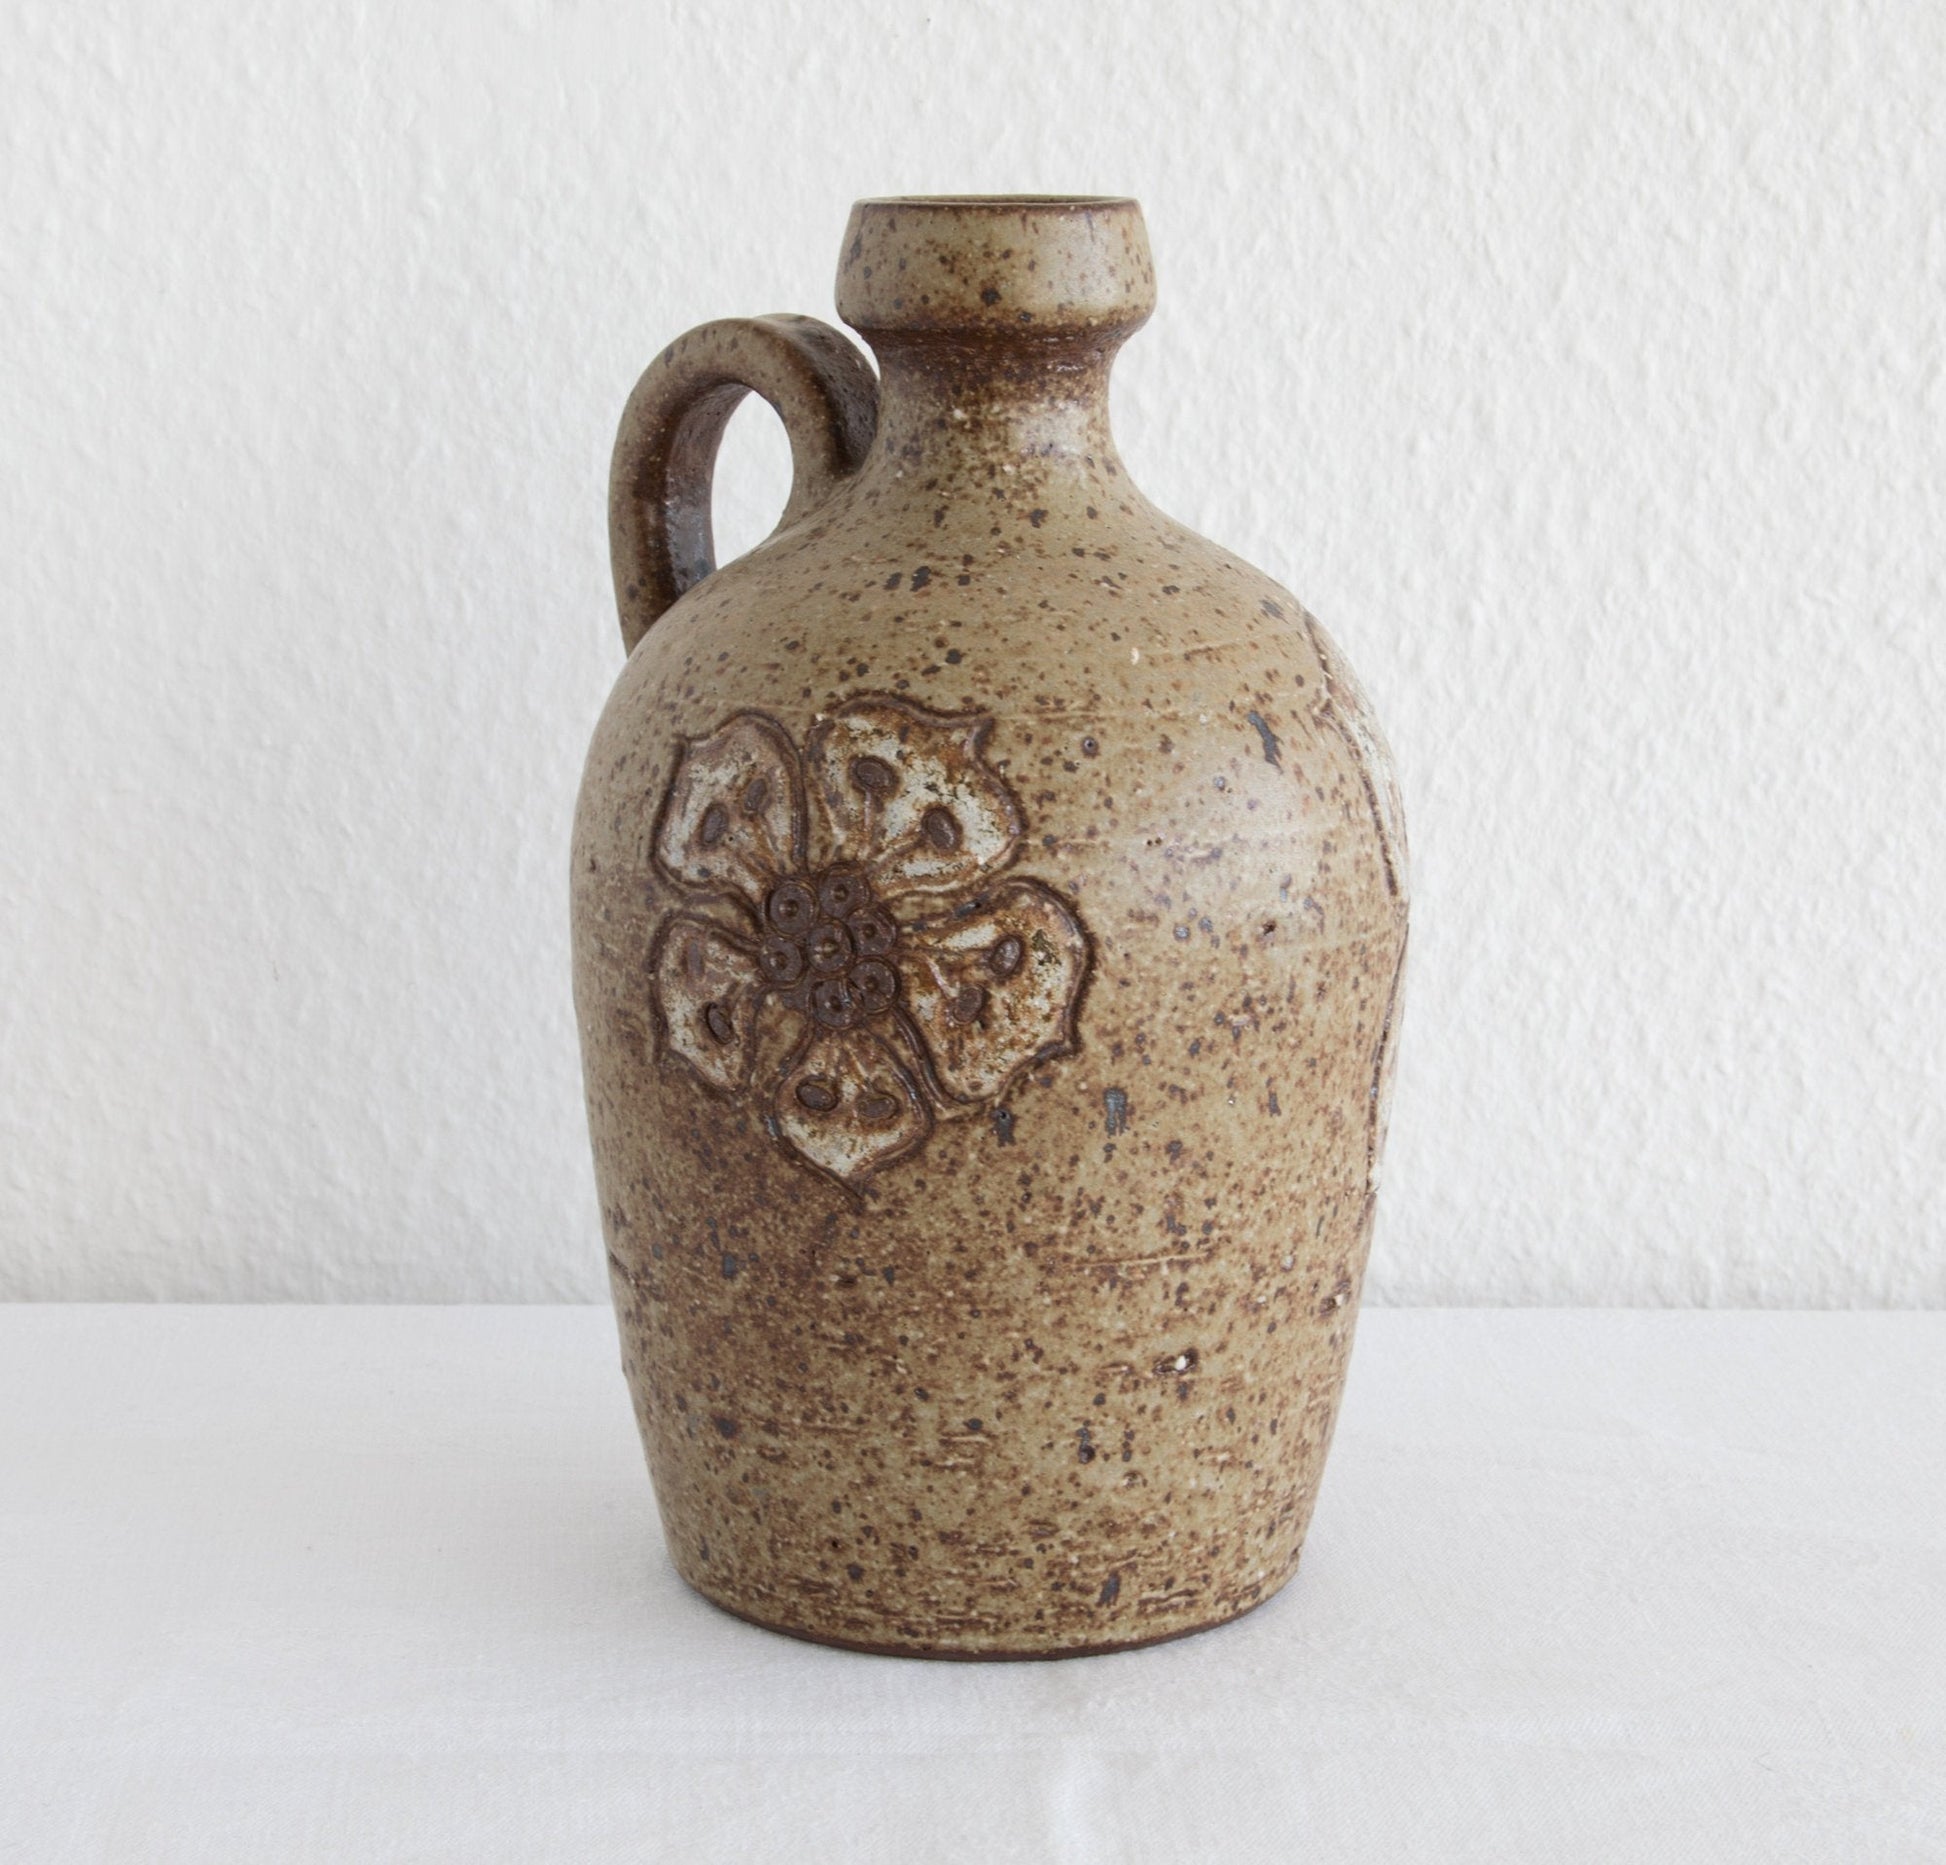 METTE LØKKE STIIL Organic Decorated Stoneware Jug Vase Mollaris.com 